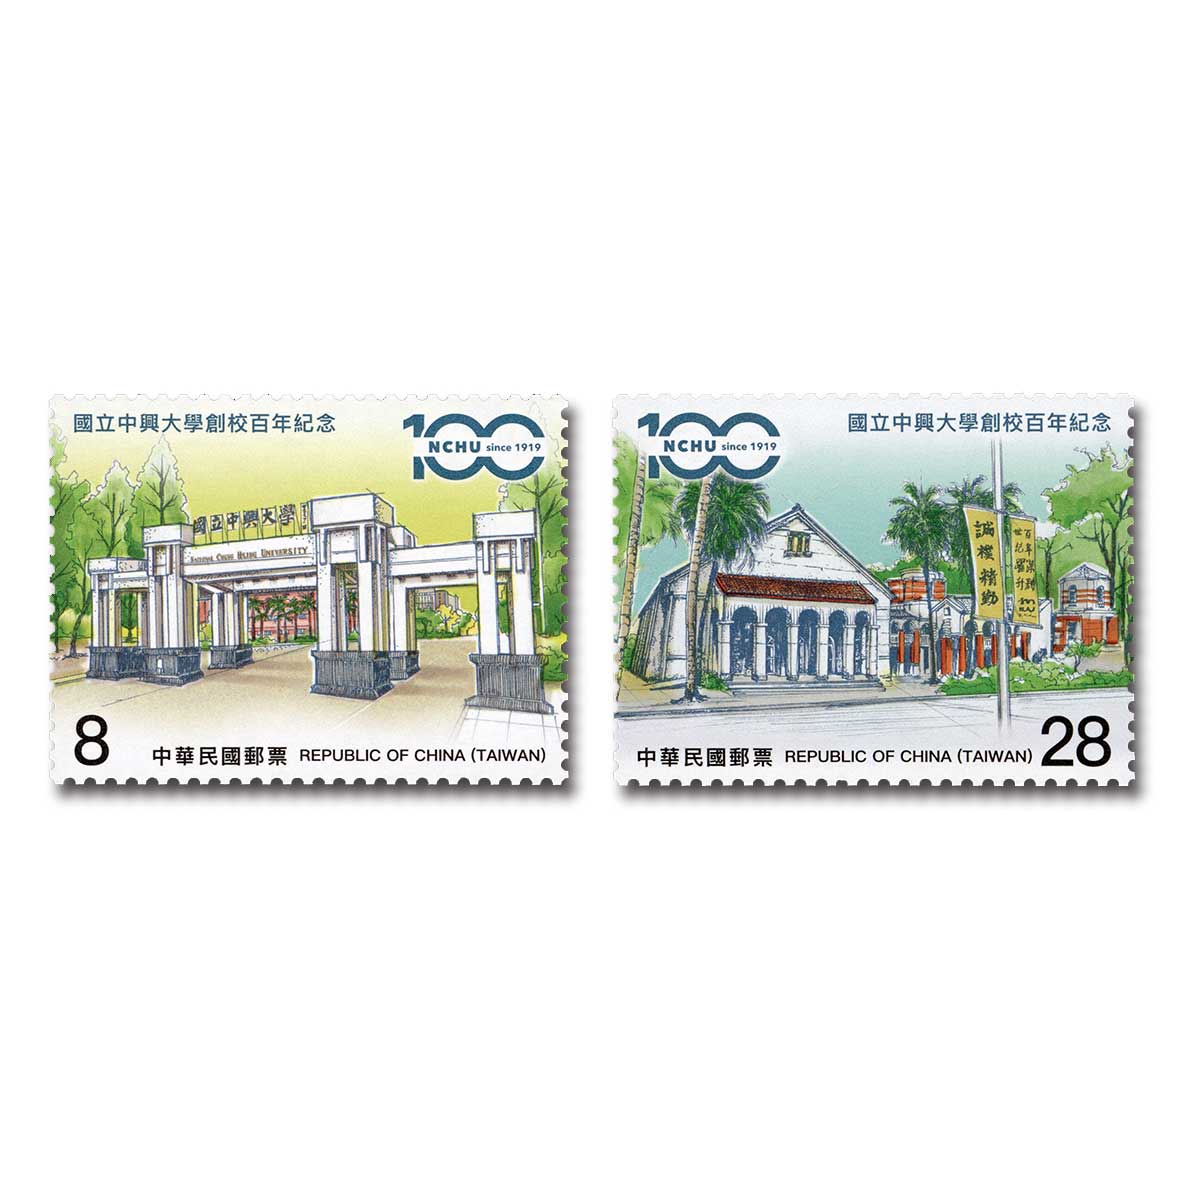 商品名稱_國立中興大學創校百年紀念郵票 